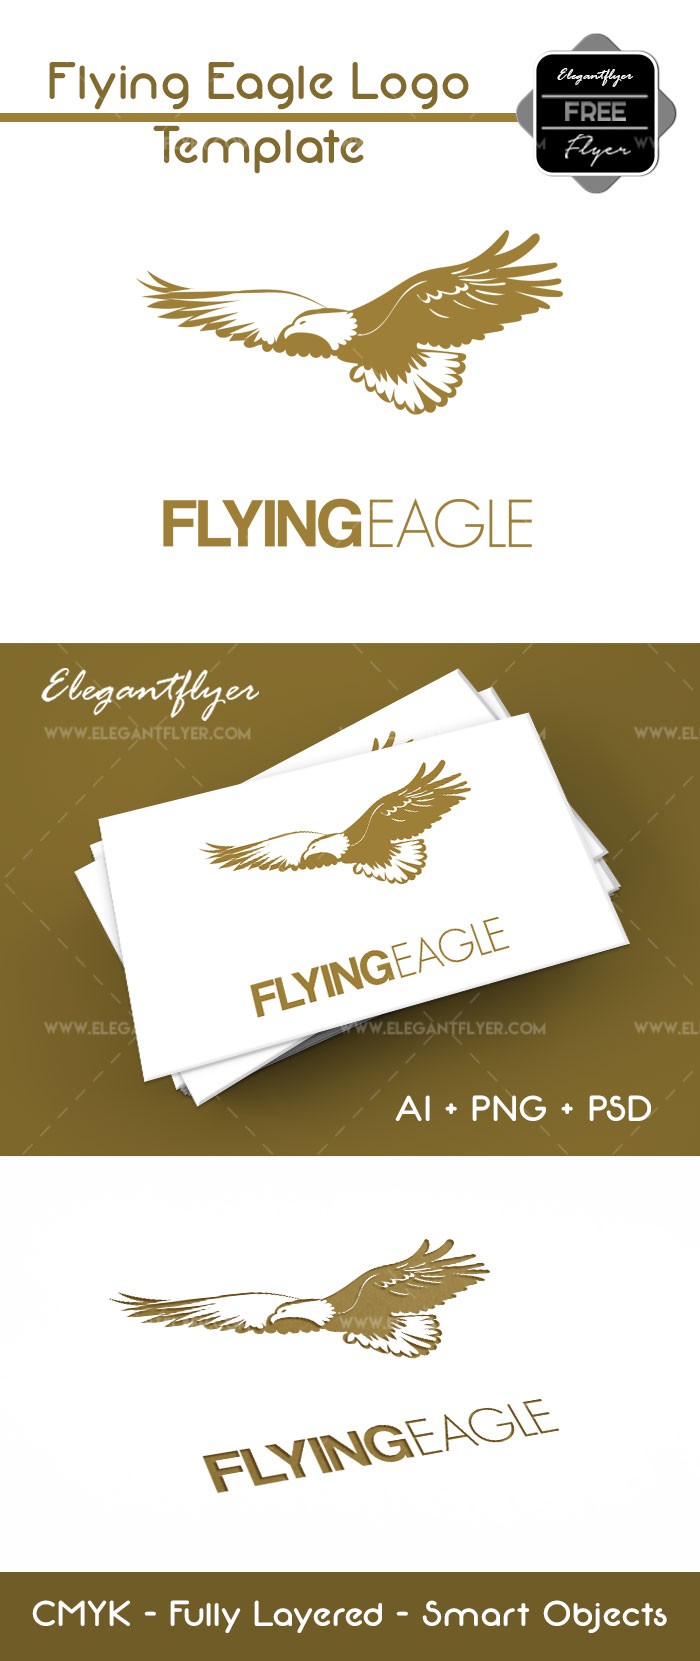 Fliegender Adler by ElegantFlyer